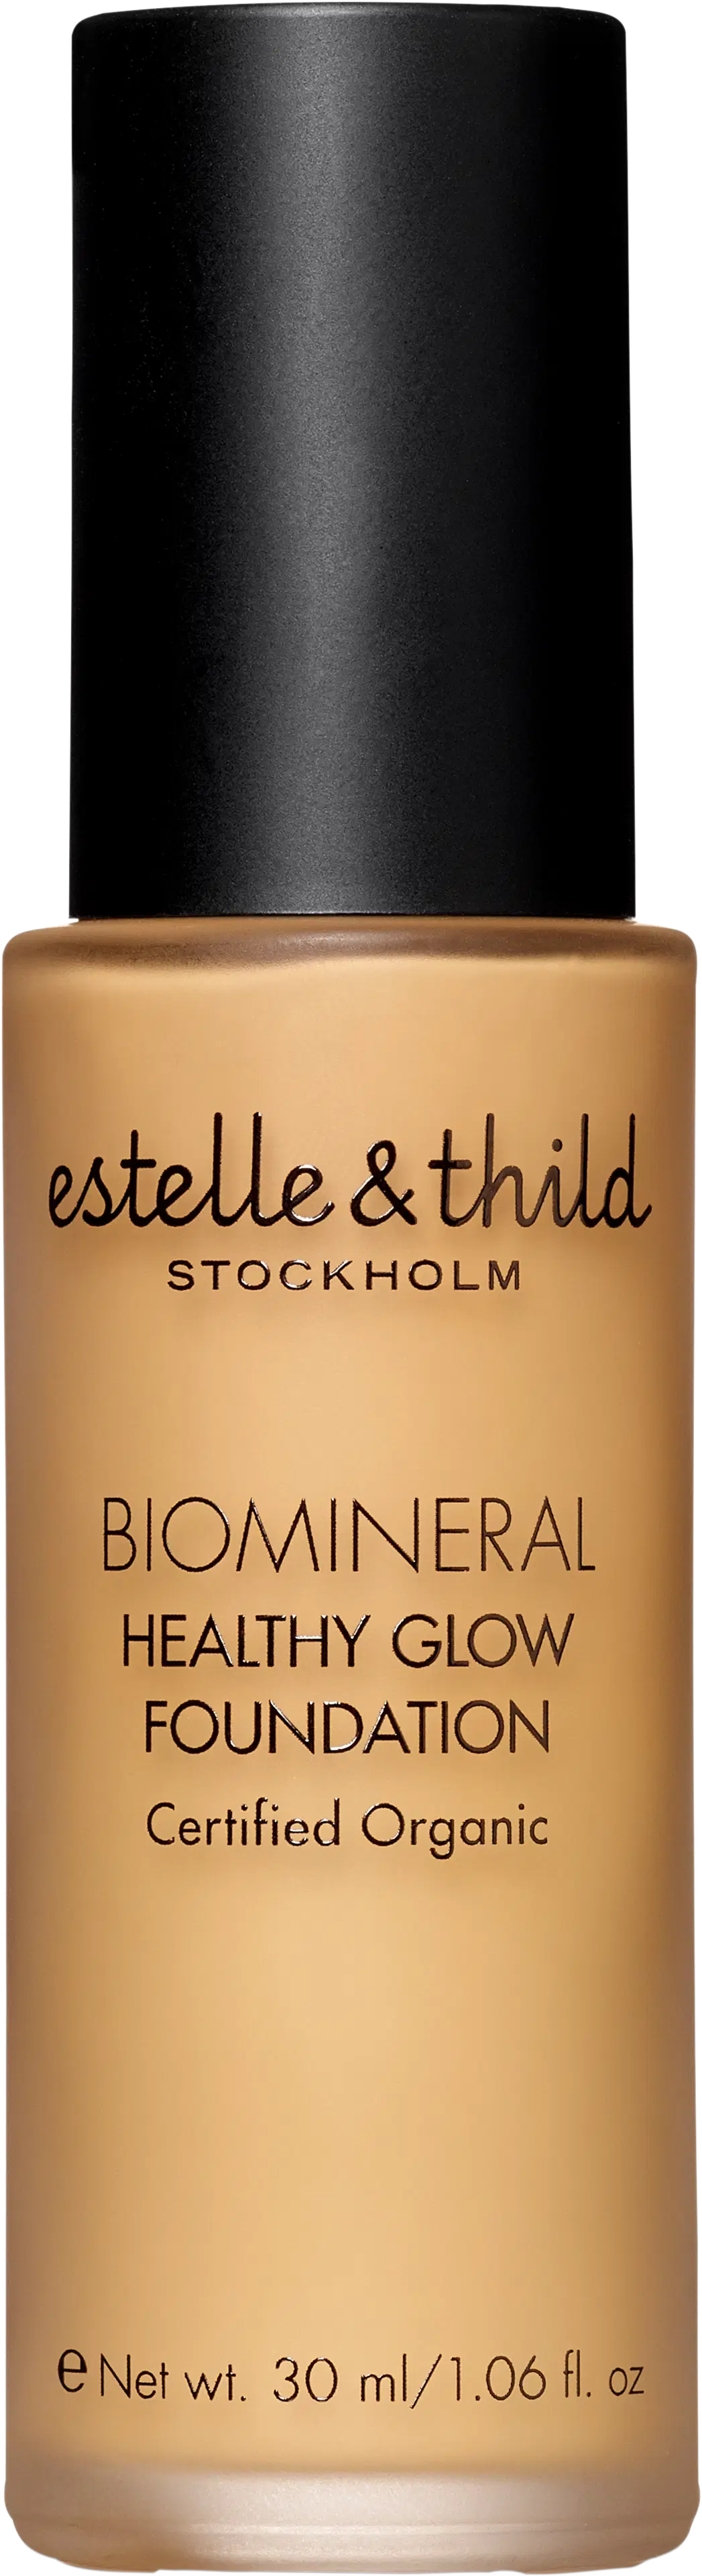 Estelle&Thild BioMineral Healthy Glow Foundation meikkivoide 30 ml